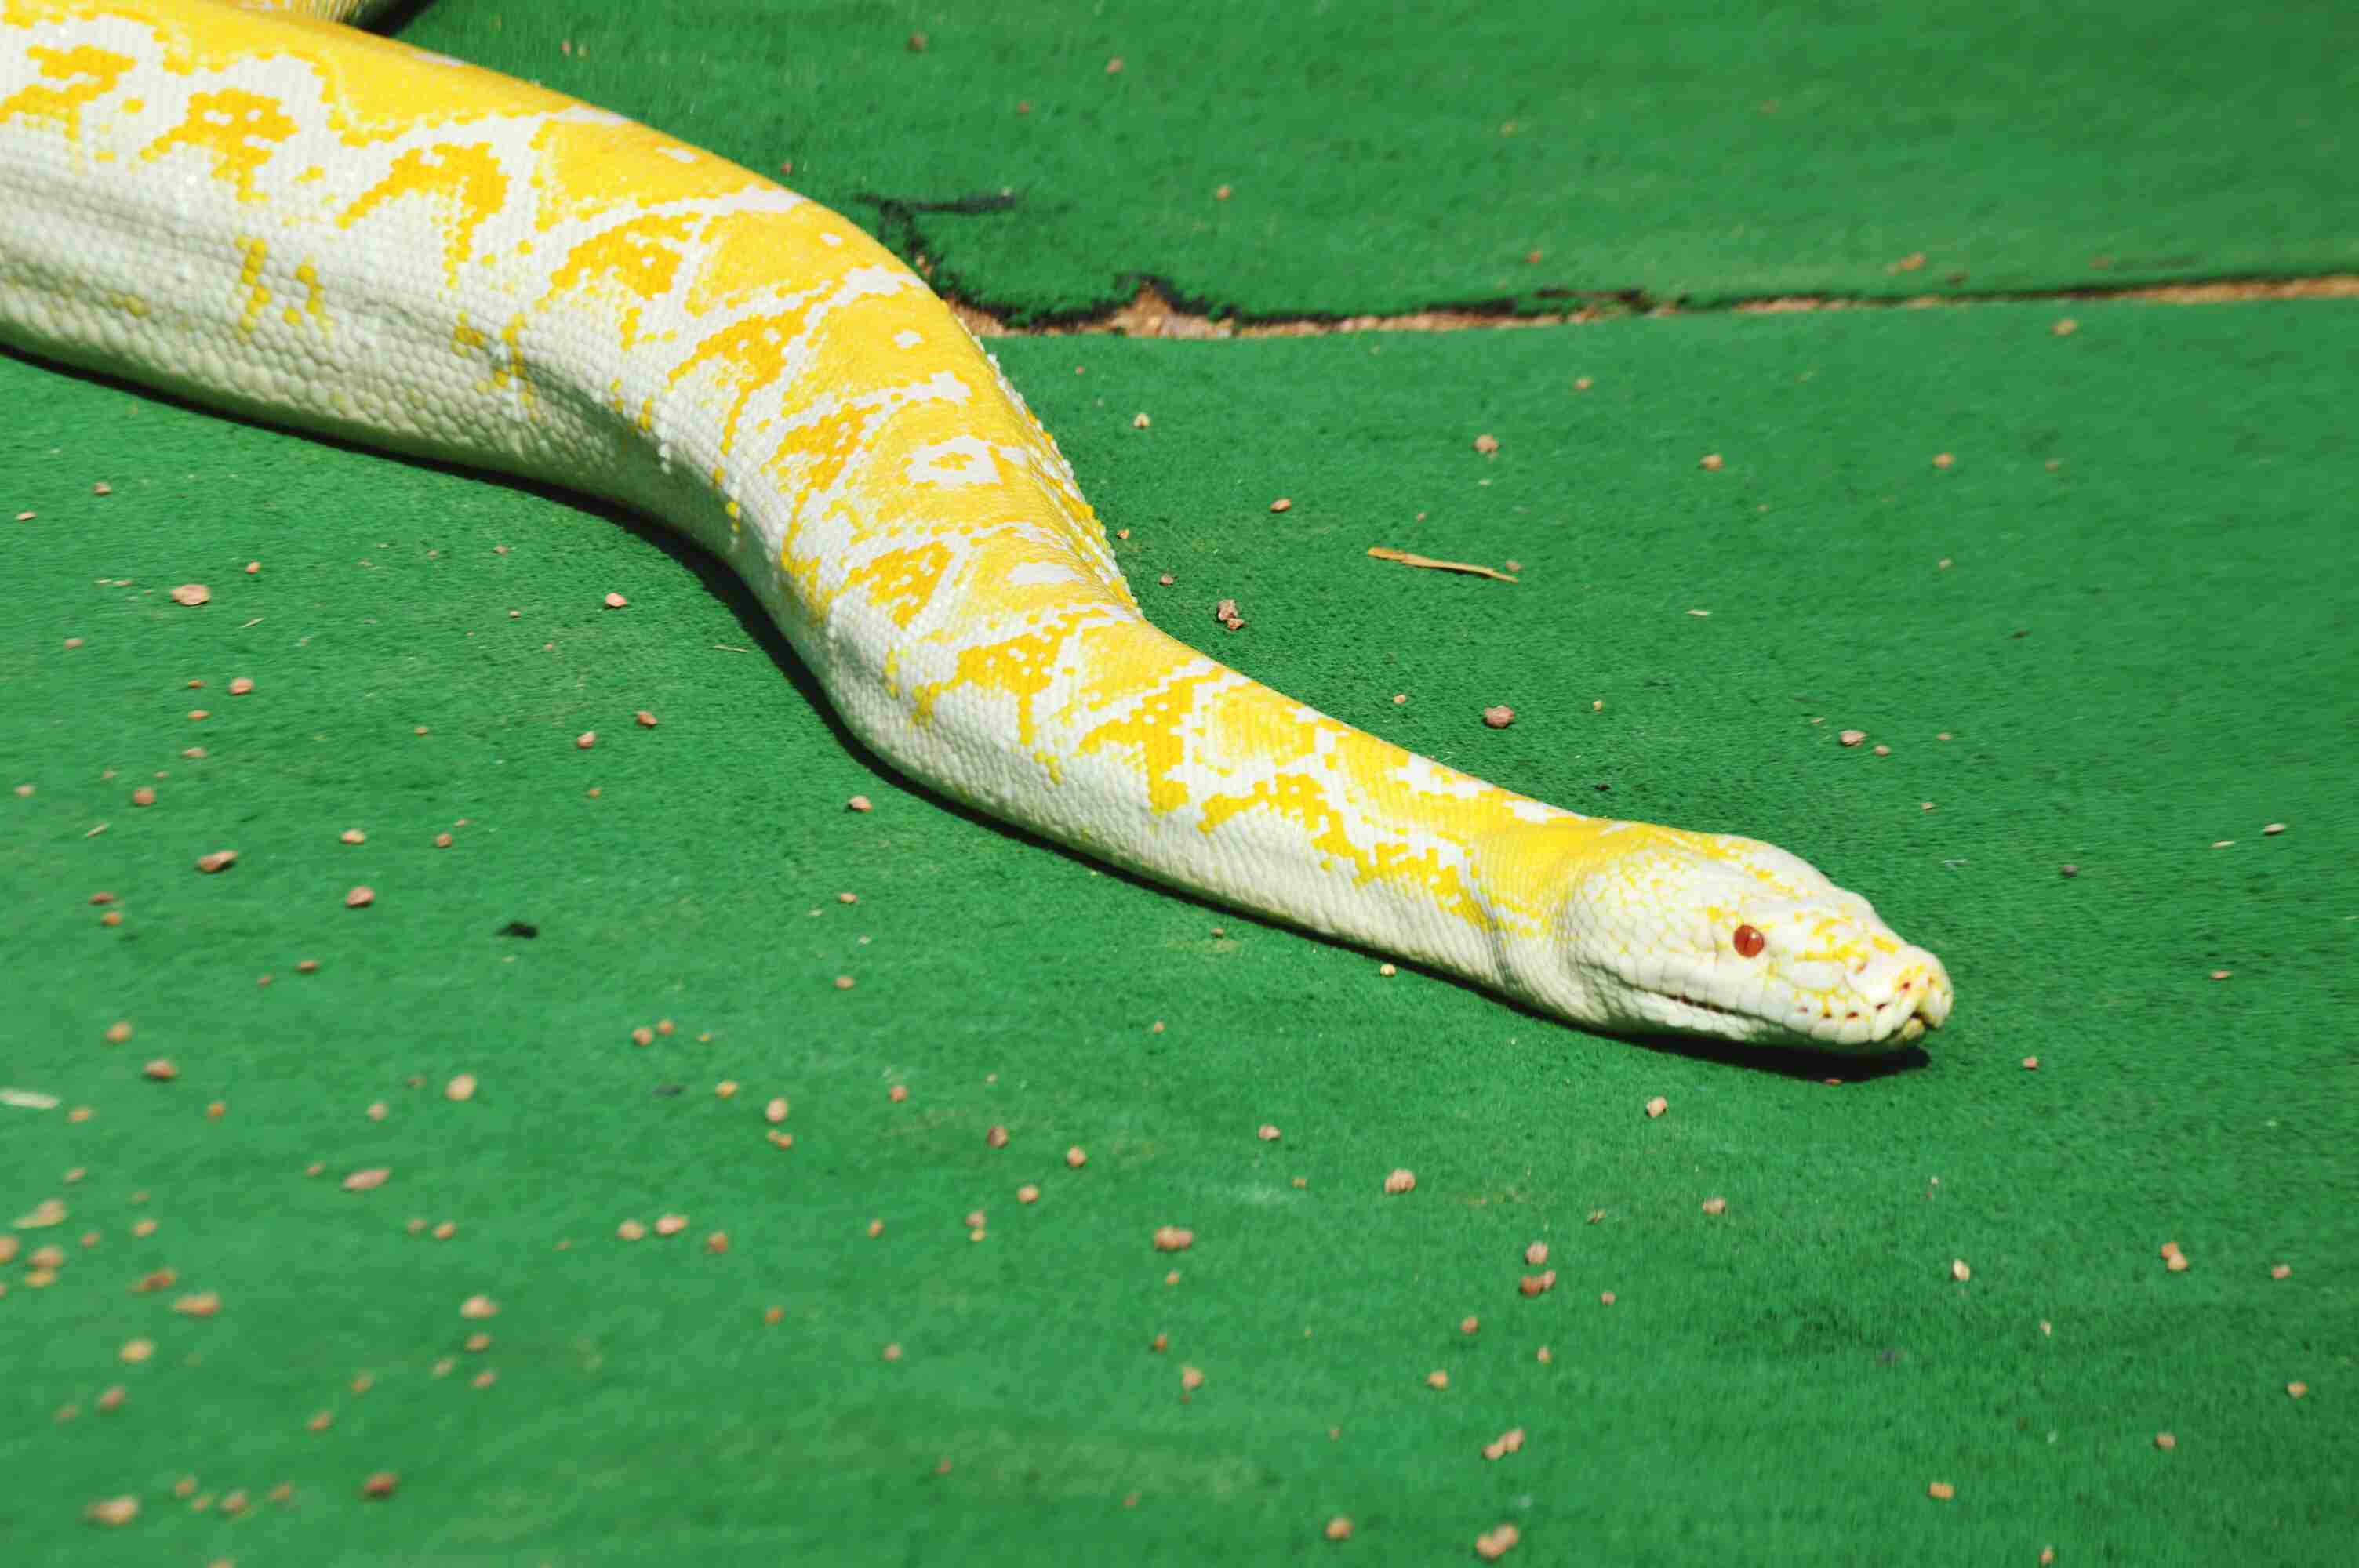 High Angle View Of Burmese Python On Green Carpet